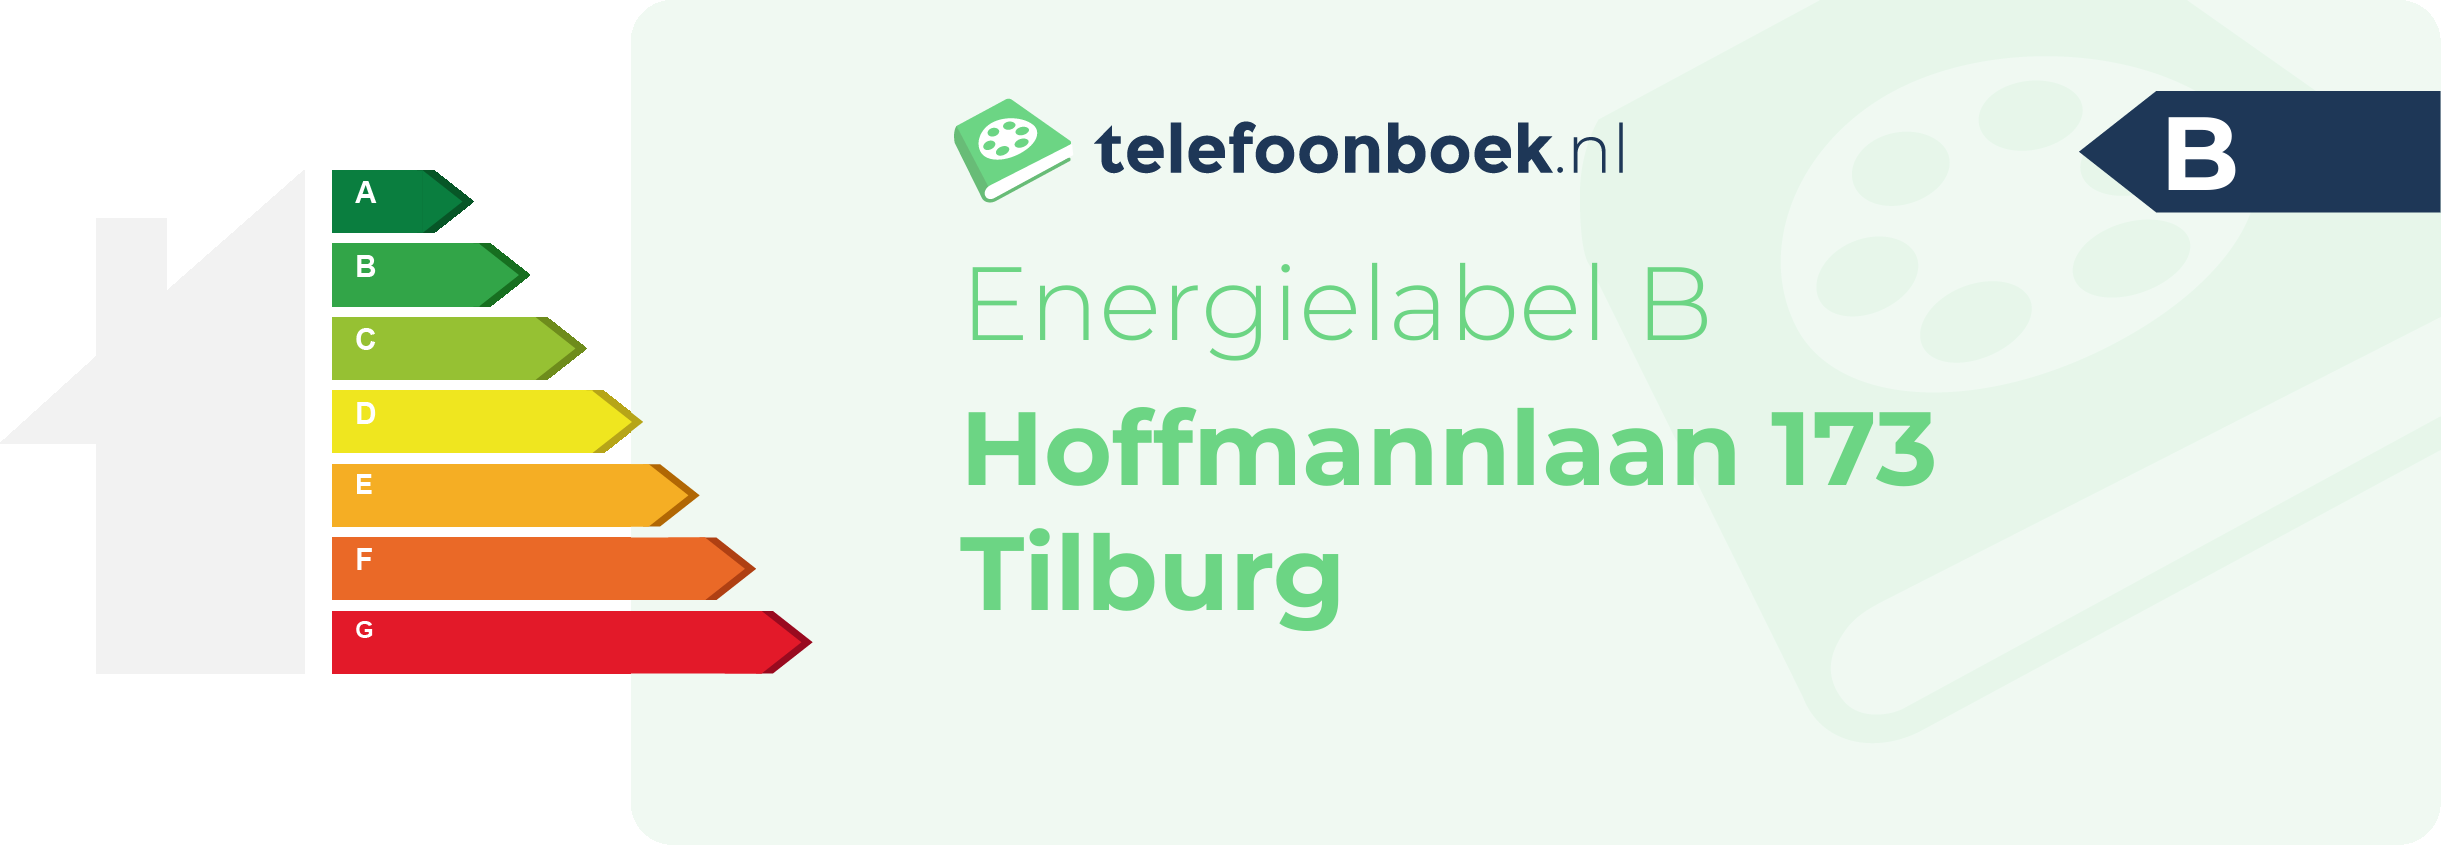 Energielabel Hoffmannlaan 173 Tilburg